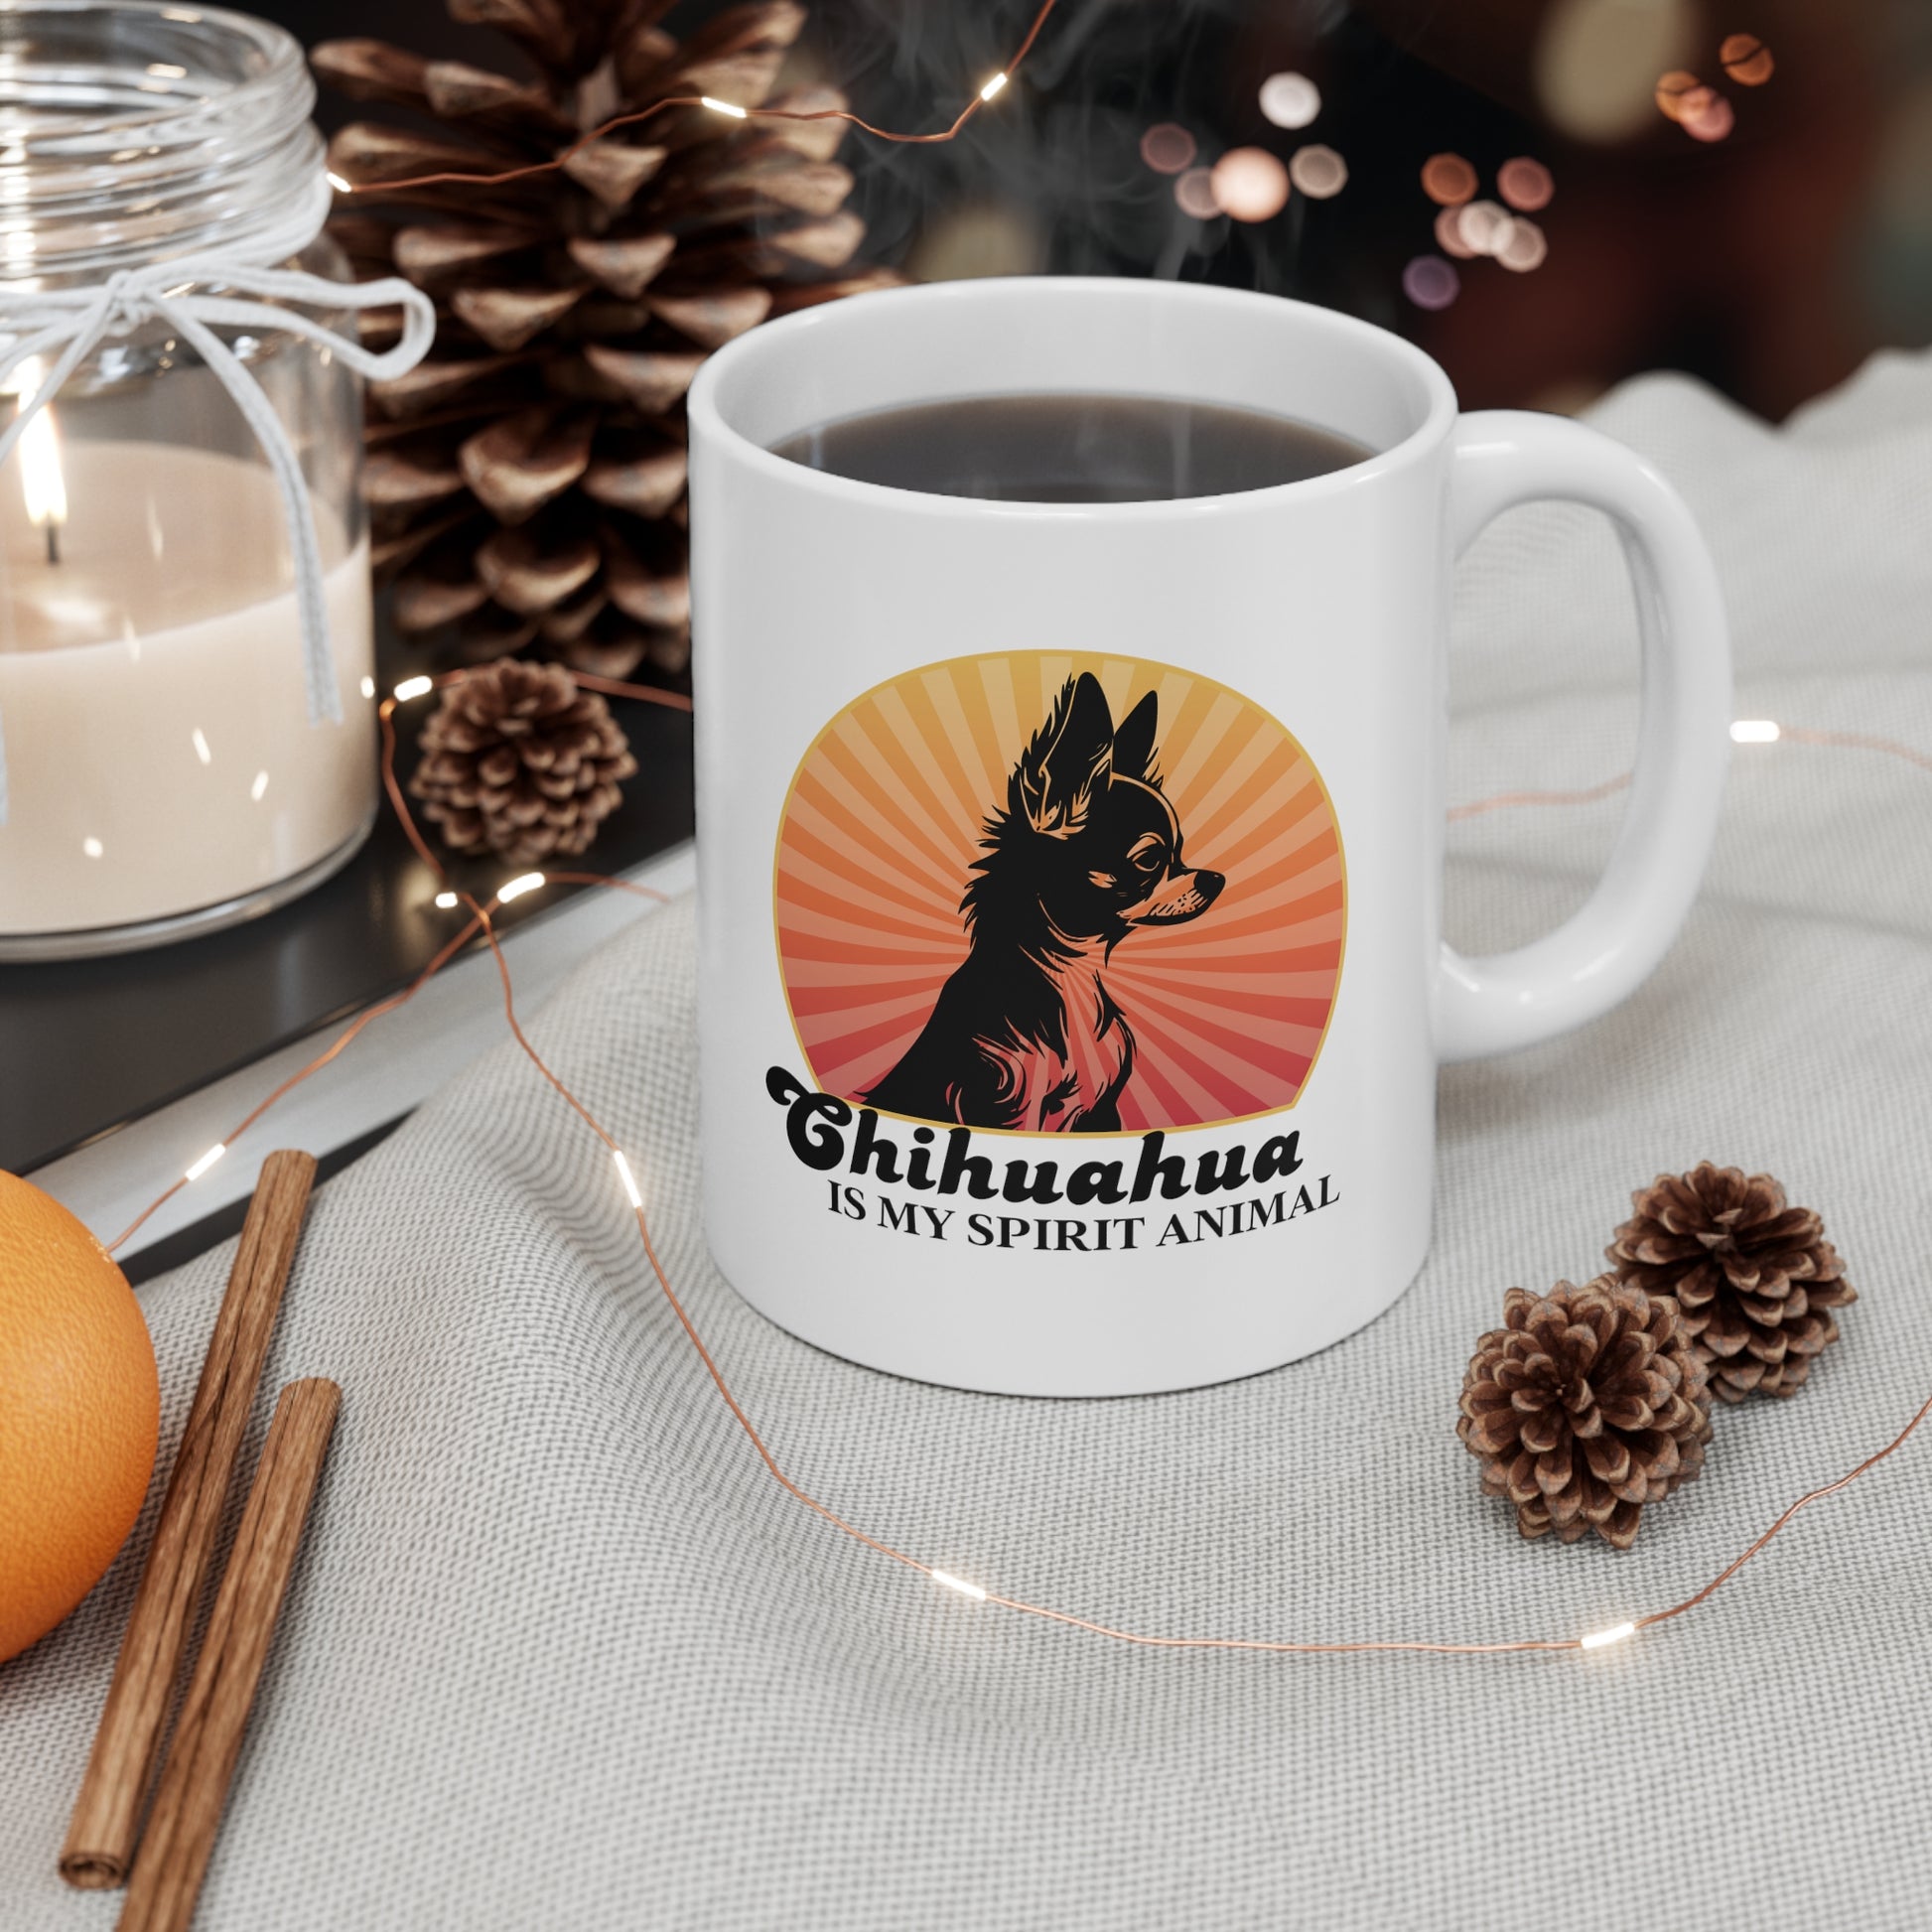 Chihuahua coffee mug